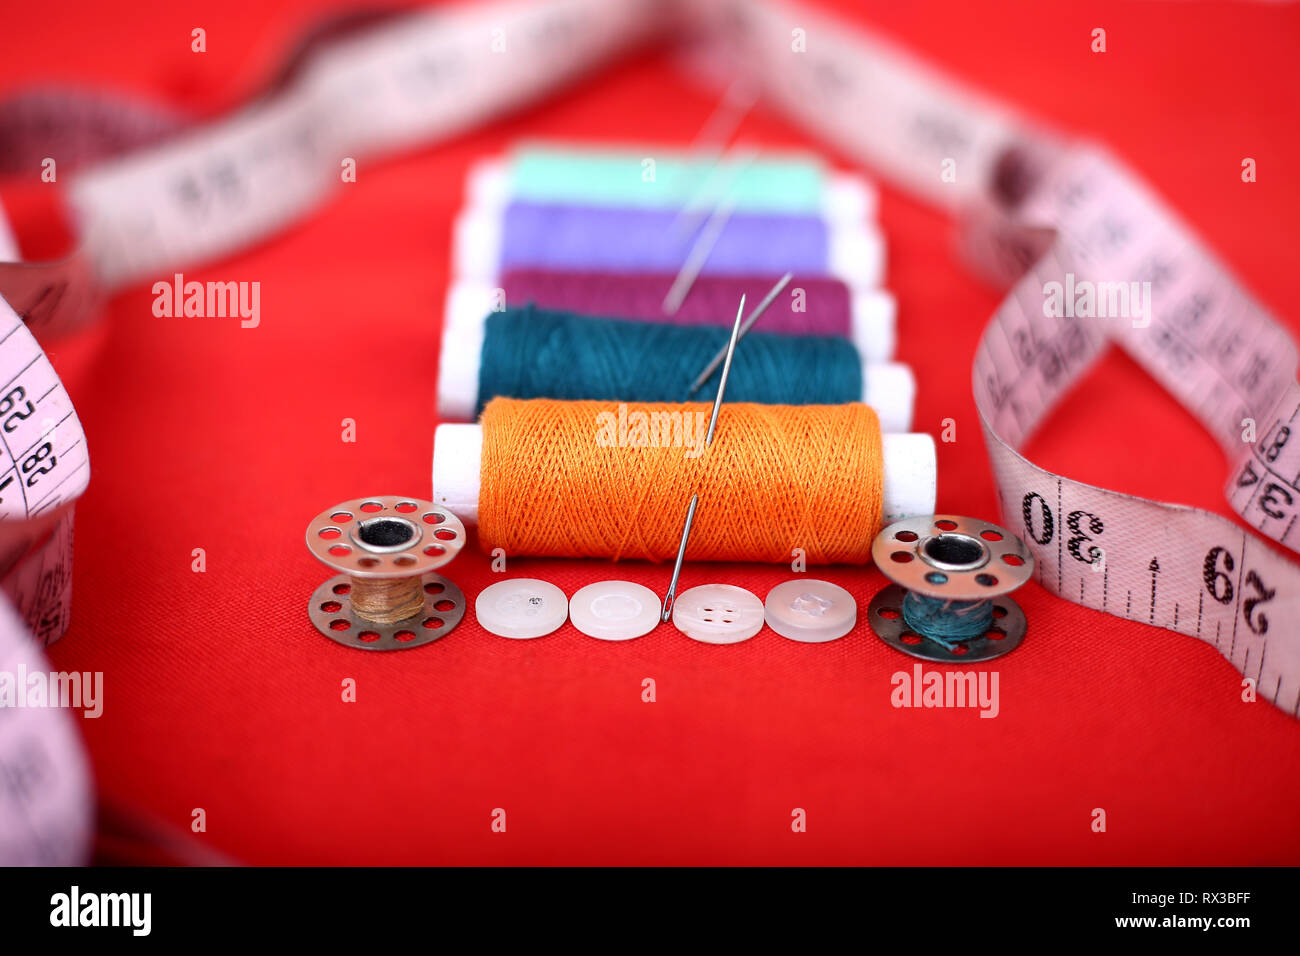 Bild von Threads, Nadeln, Spulen, Maßband und Knopf. Auf dem roten Hintergrund. Stockfoto